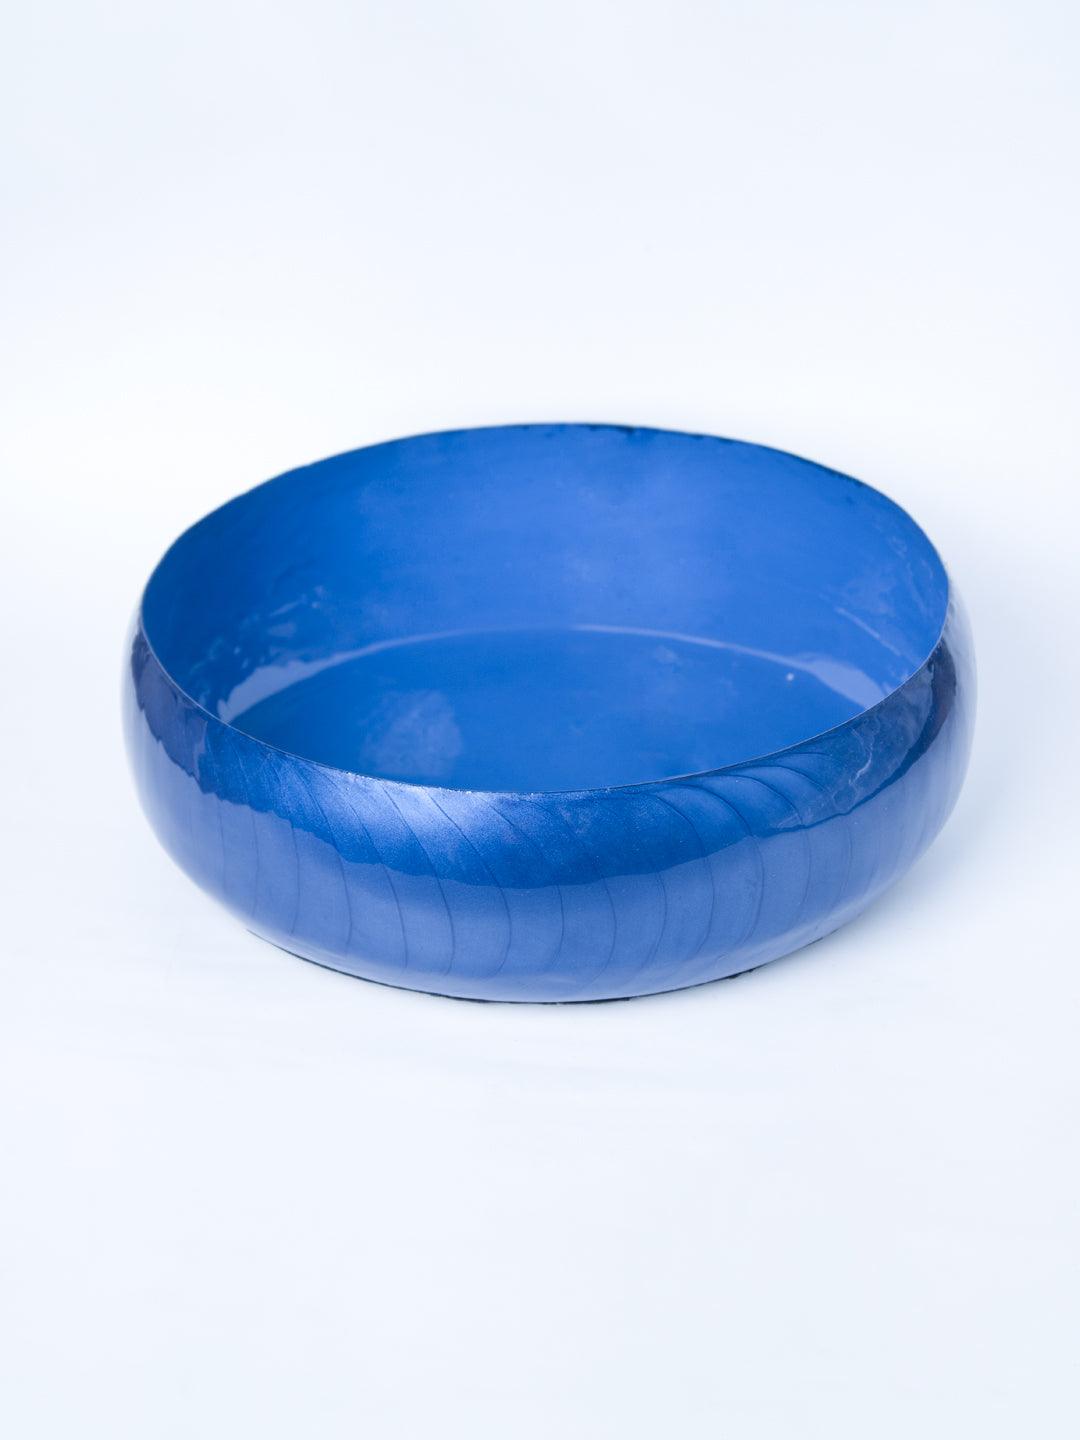 Blue Decorative Bowl (Blue Enamel) - 2